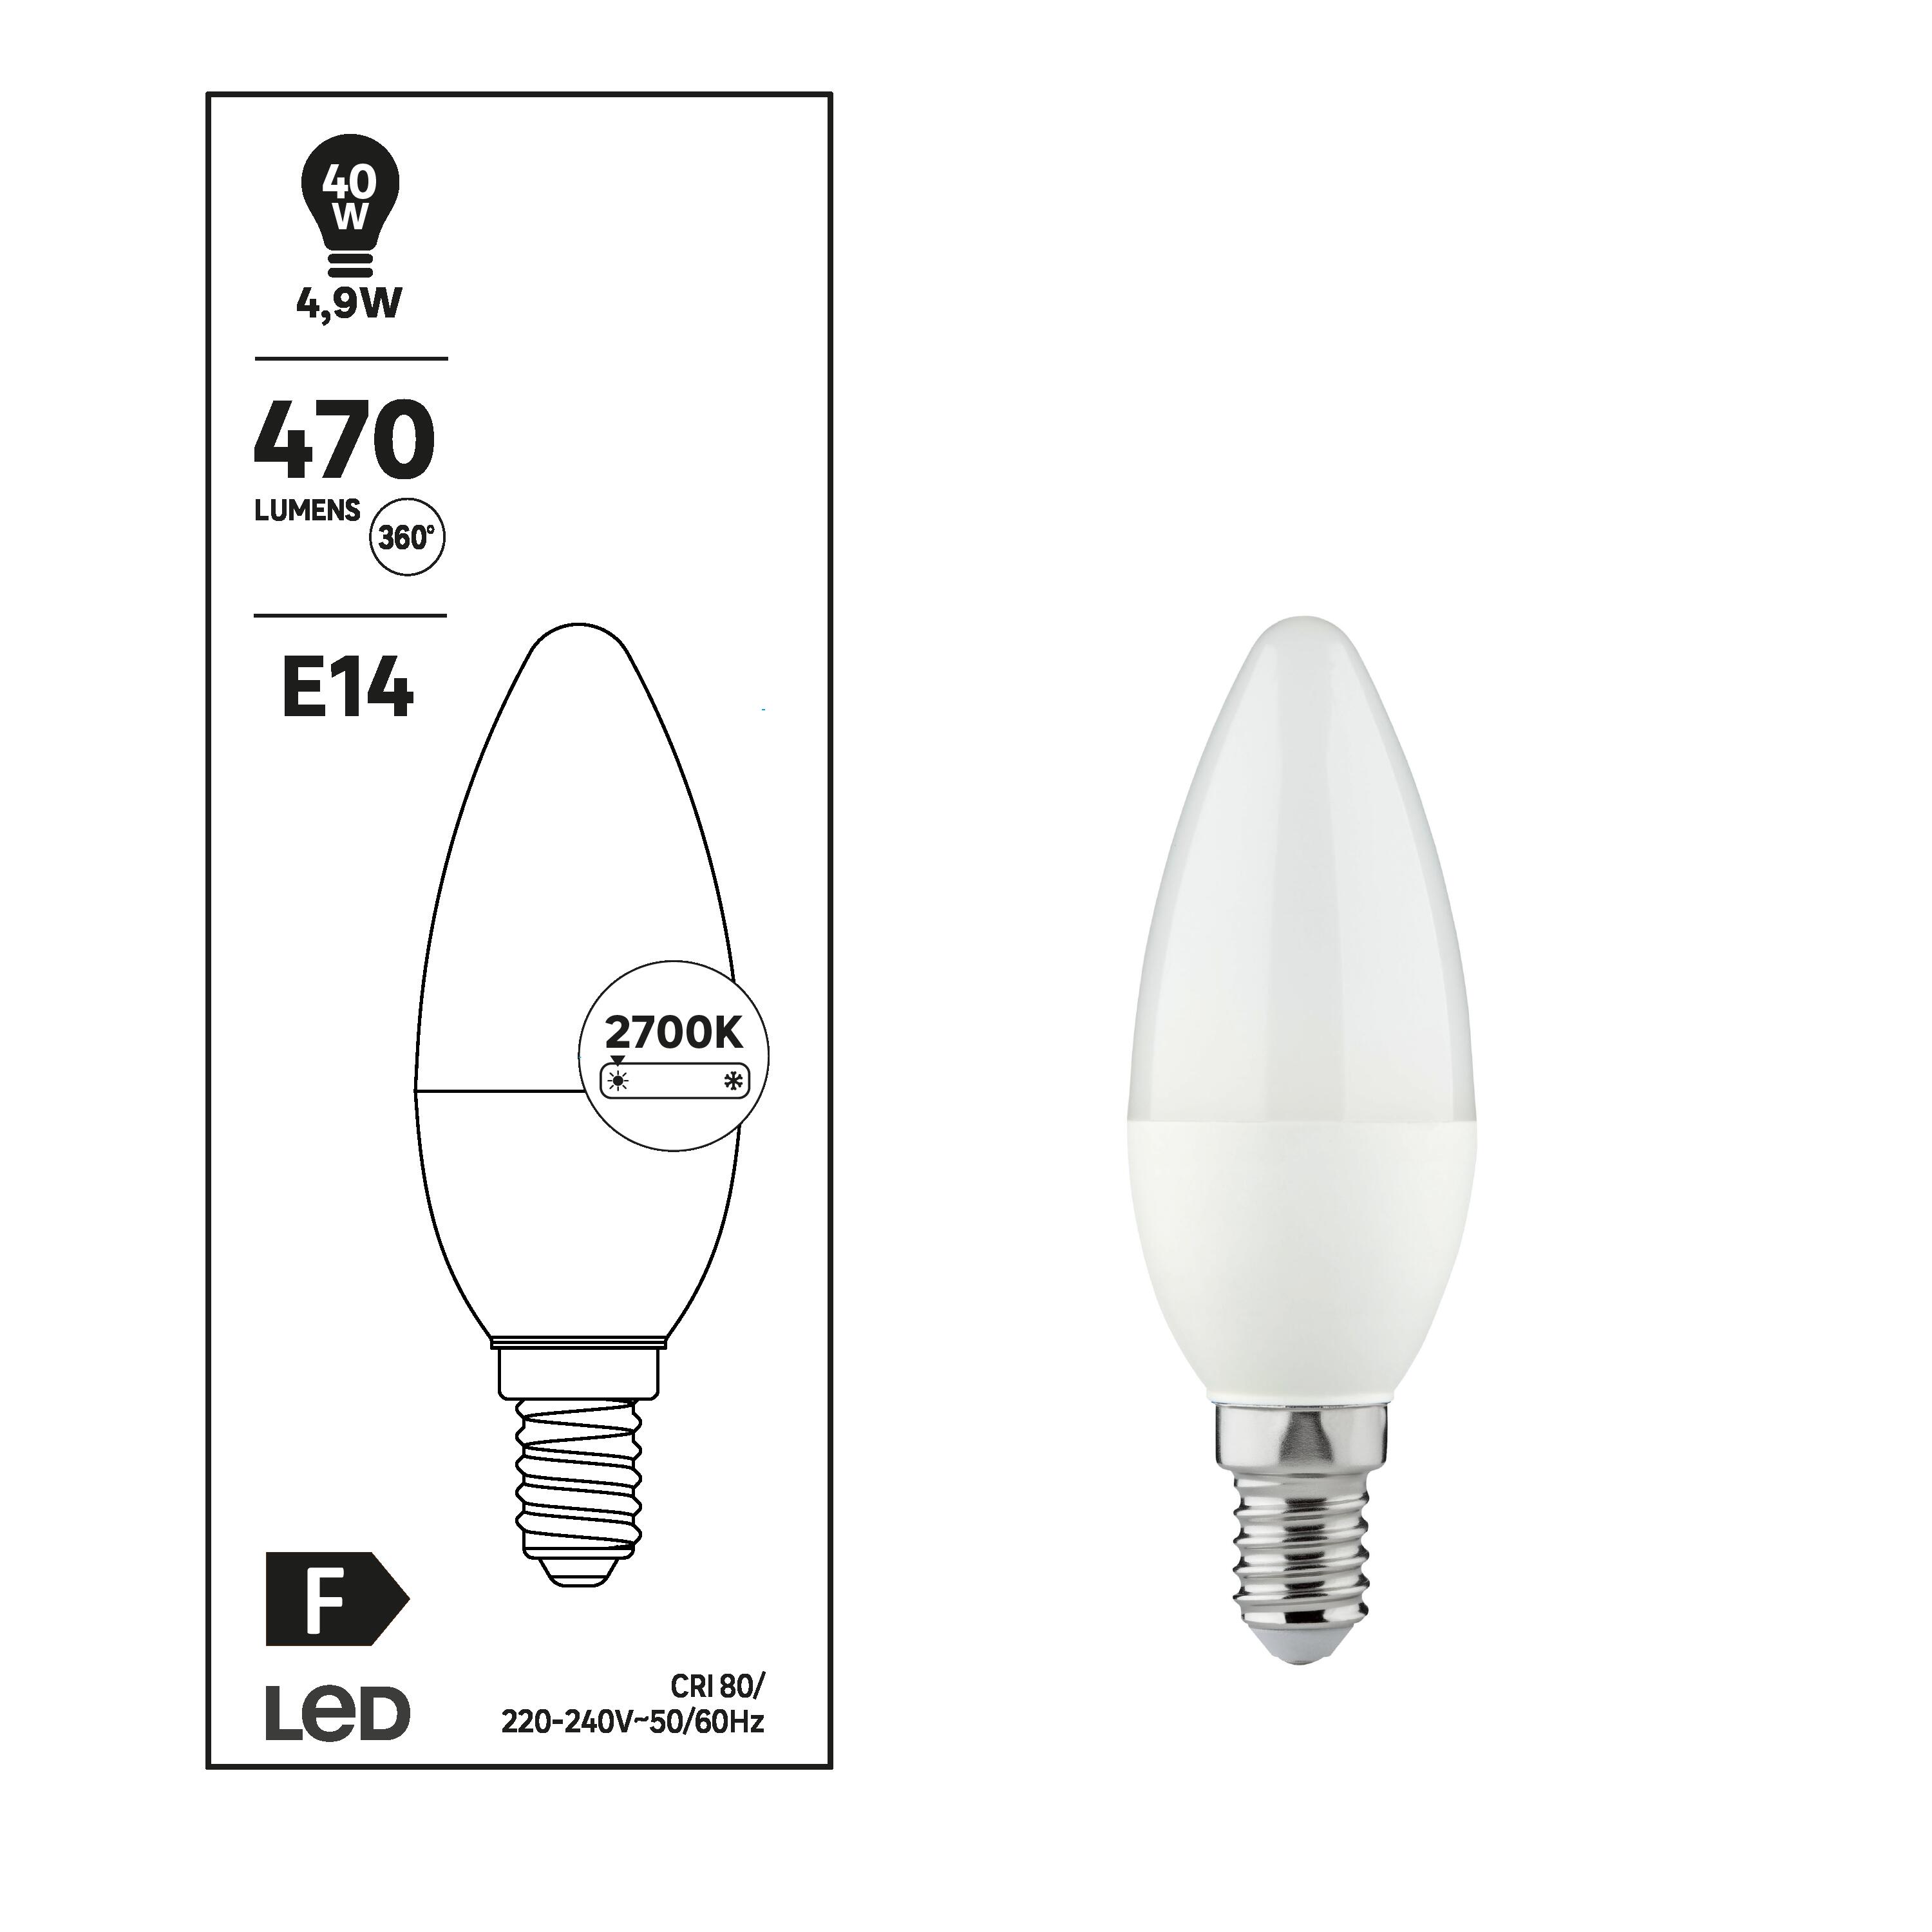 Ampoule led connectée flamme E14, 470Lm = 40W, variation de blancs